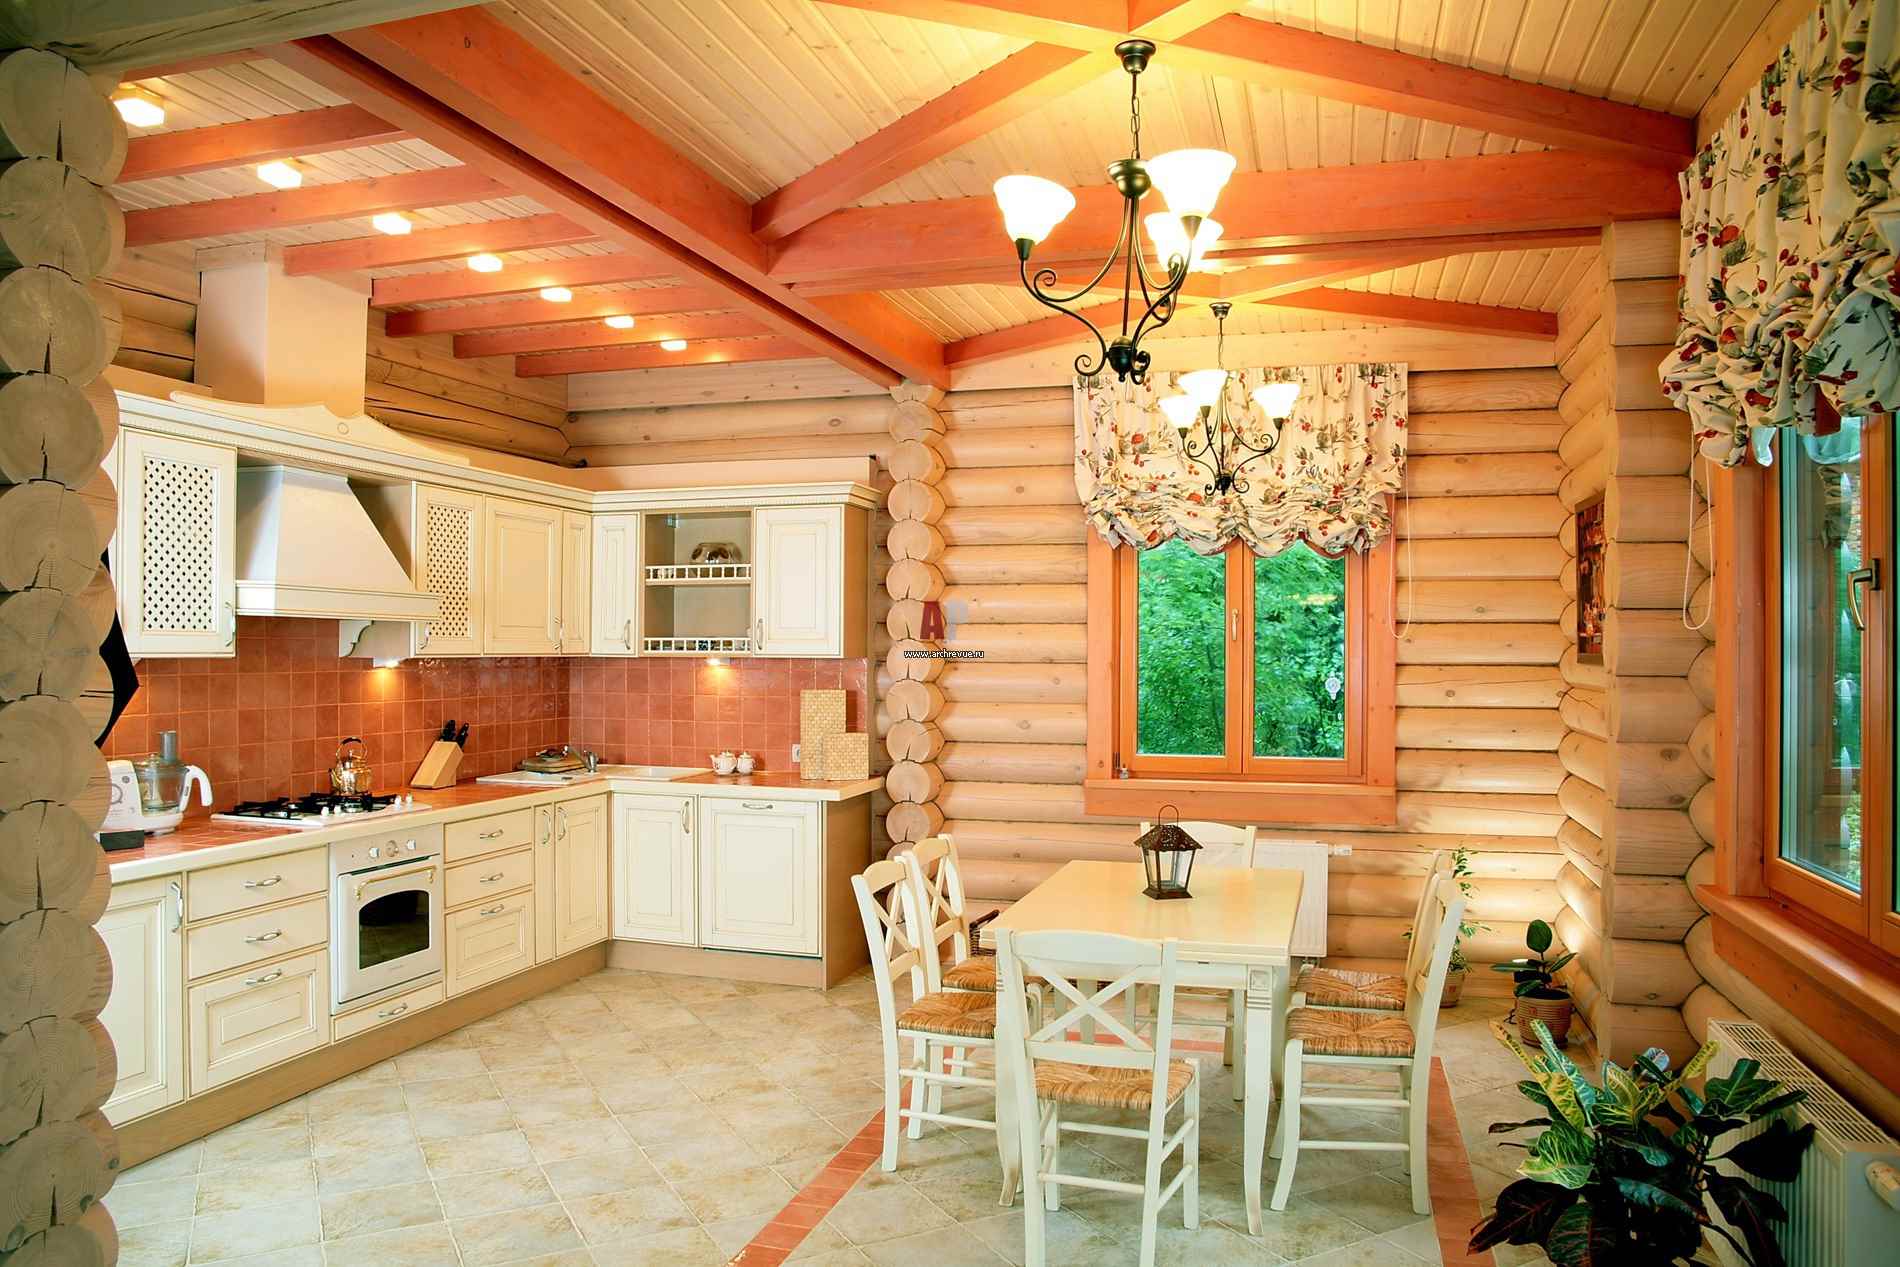 Un exemple de style de cuisine lumineux dans une maison en bois